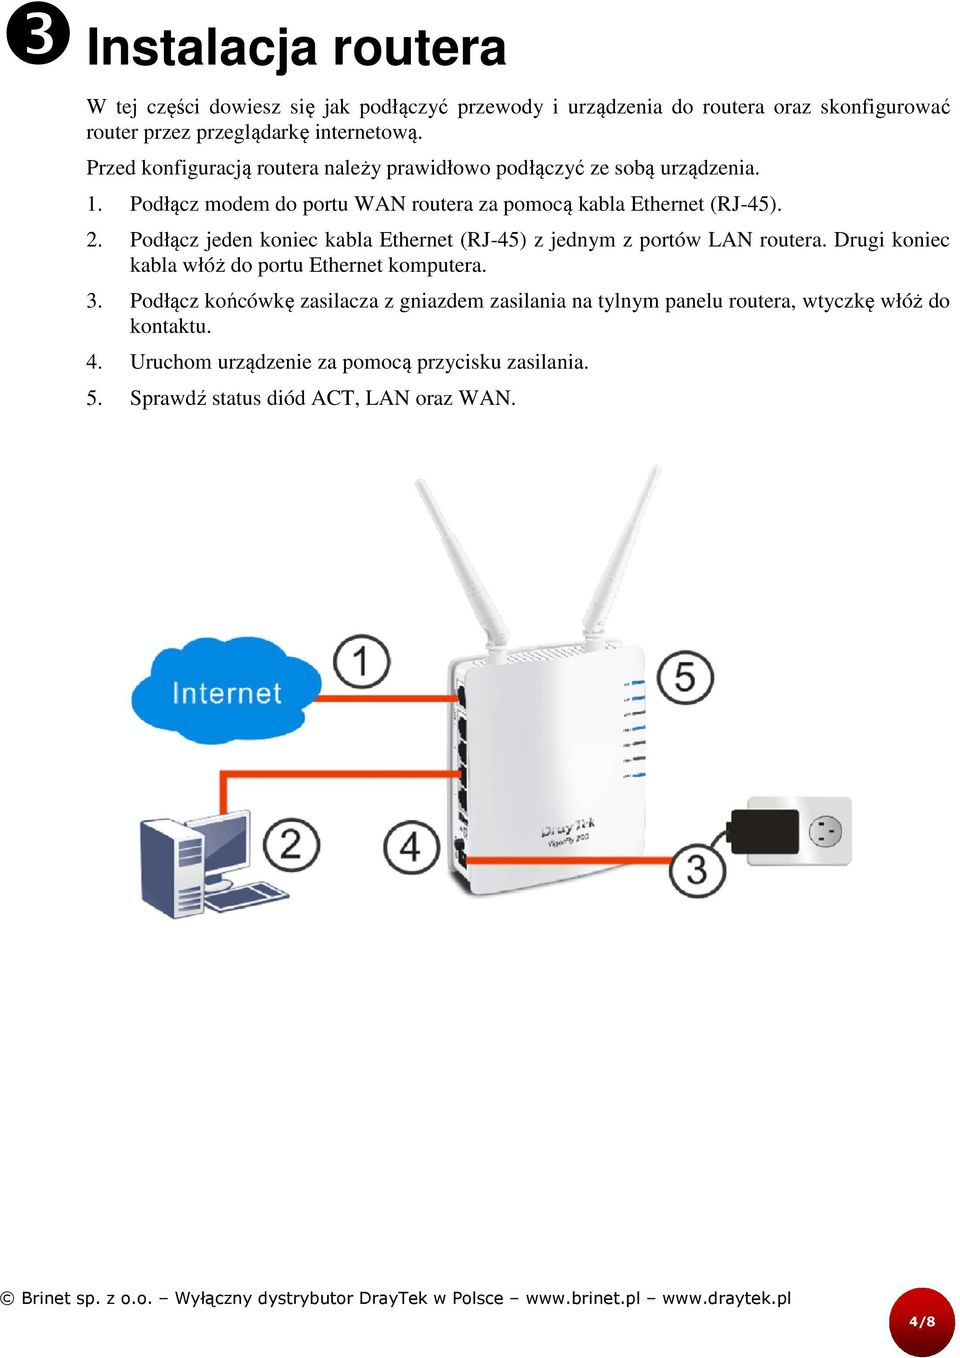 Podłącz jeden koniec kabla Ethernet (RJ-45) z jednym z portów LAN routera. Drugi koniec kabla włóż do portu Ethernet komputera. 3.